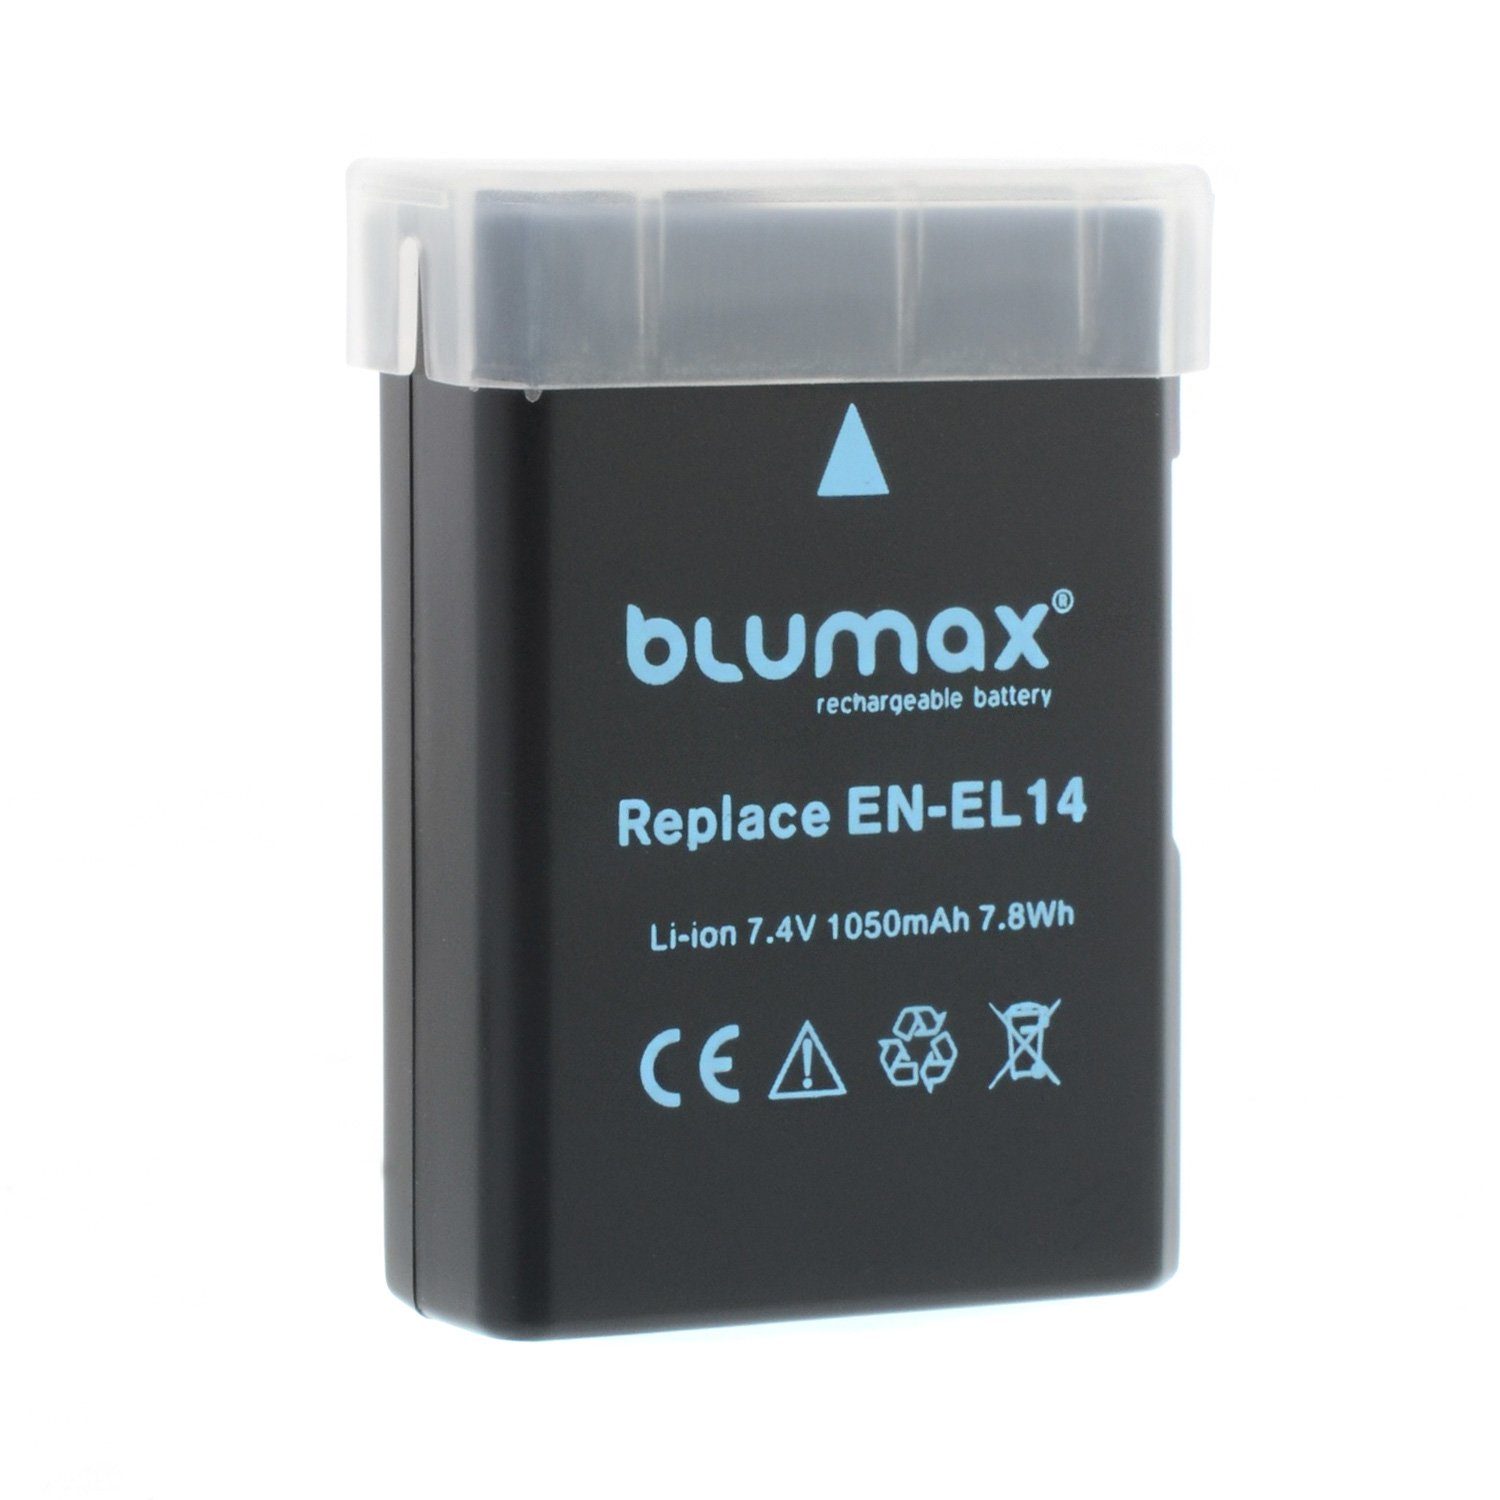 Blumax 2x EN-EL14 D3300 D5300 1050 D5600 P7800 mAh D5500 Kamera-Akku